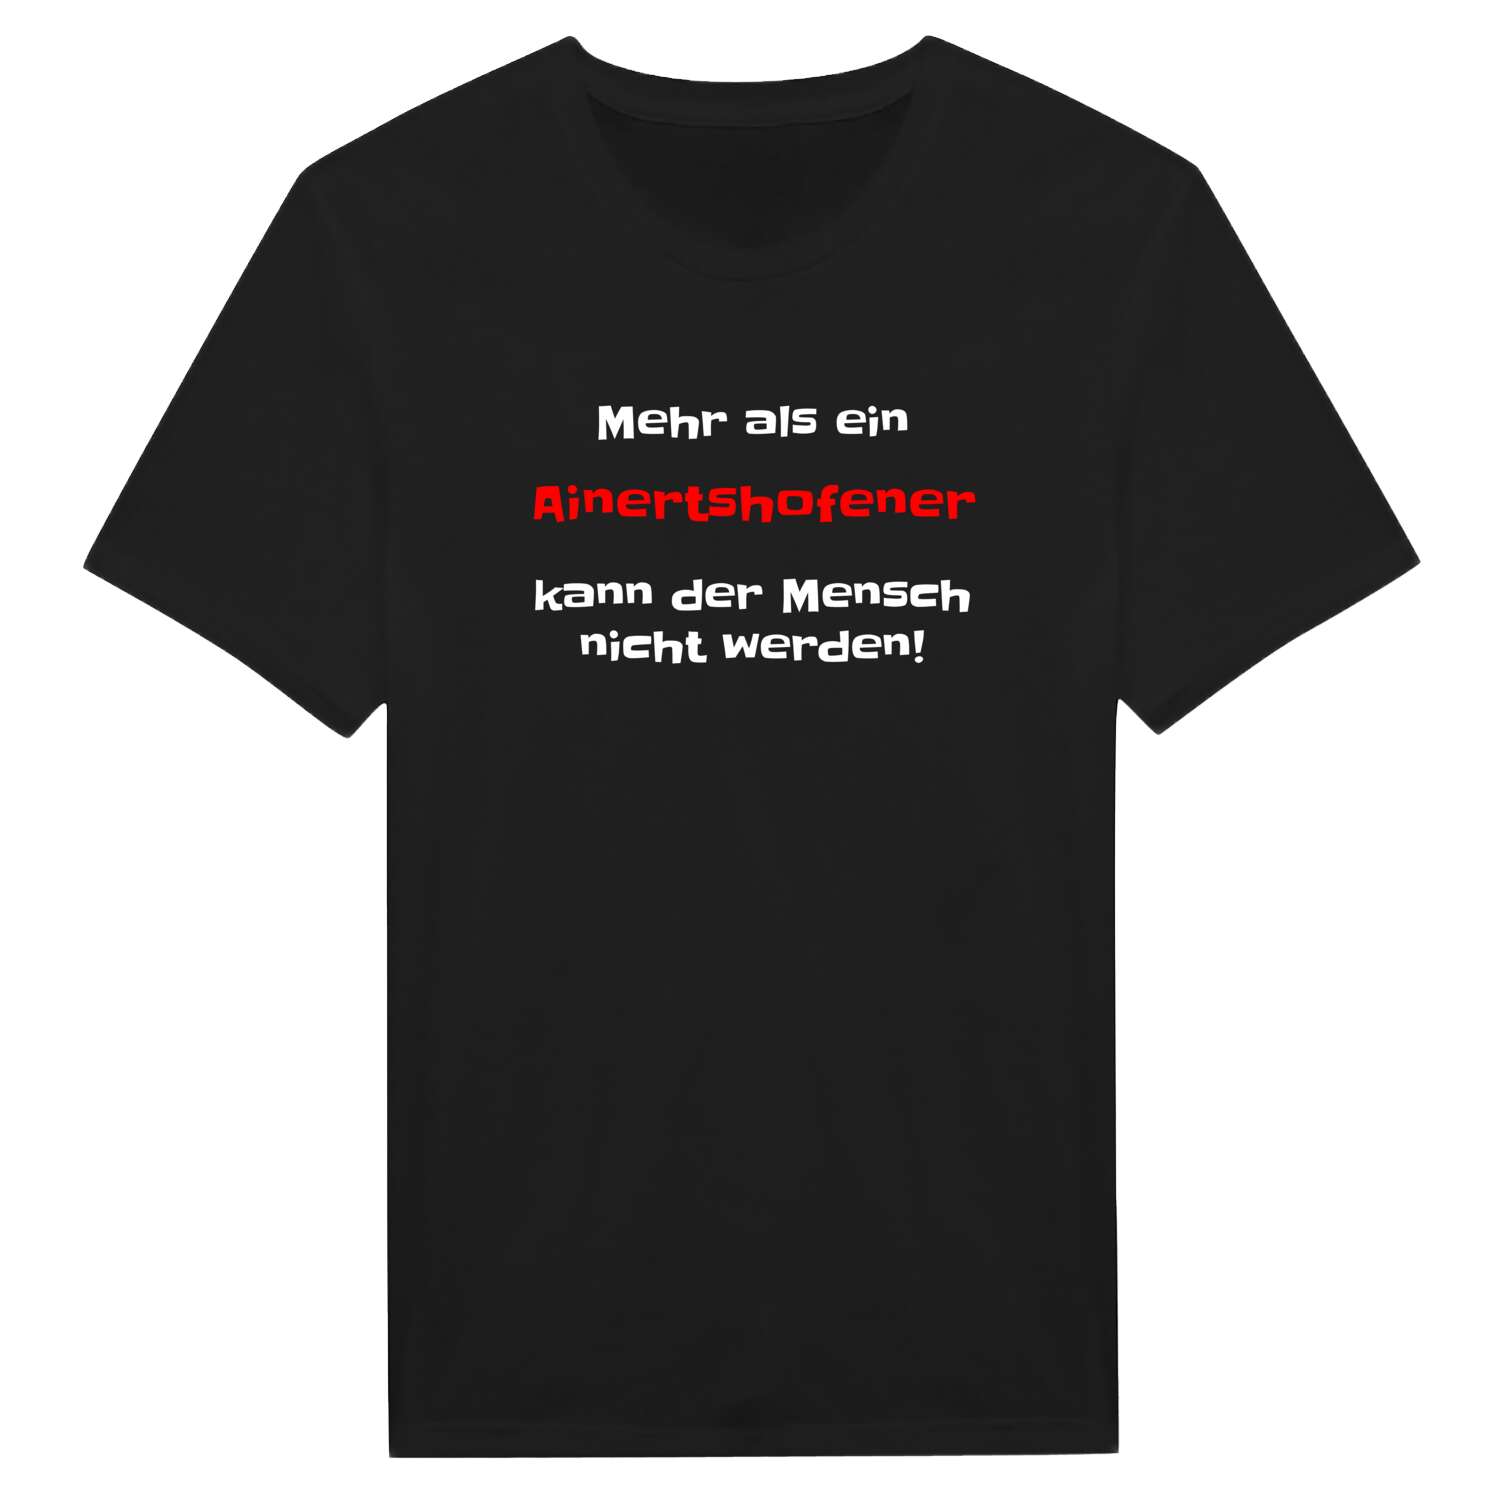 Ainertshofen T-Shirt »Mehr als ein«